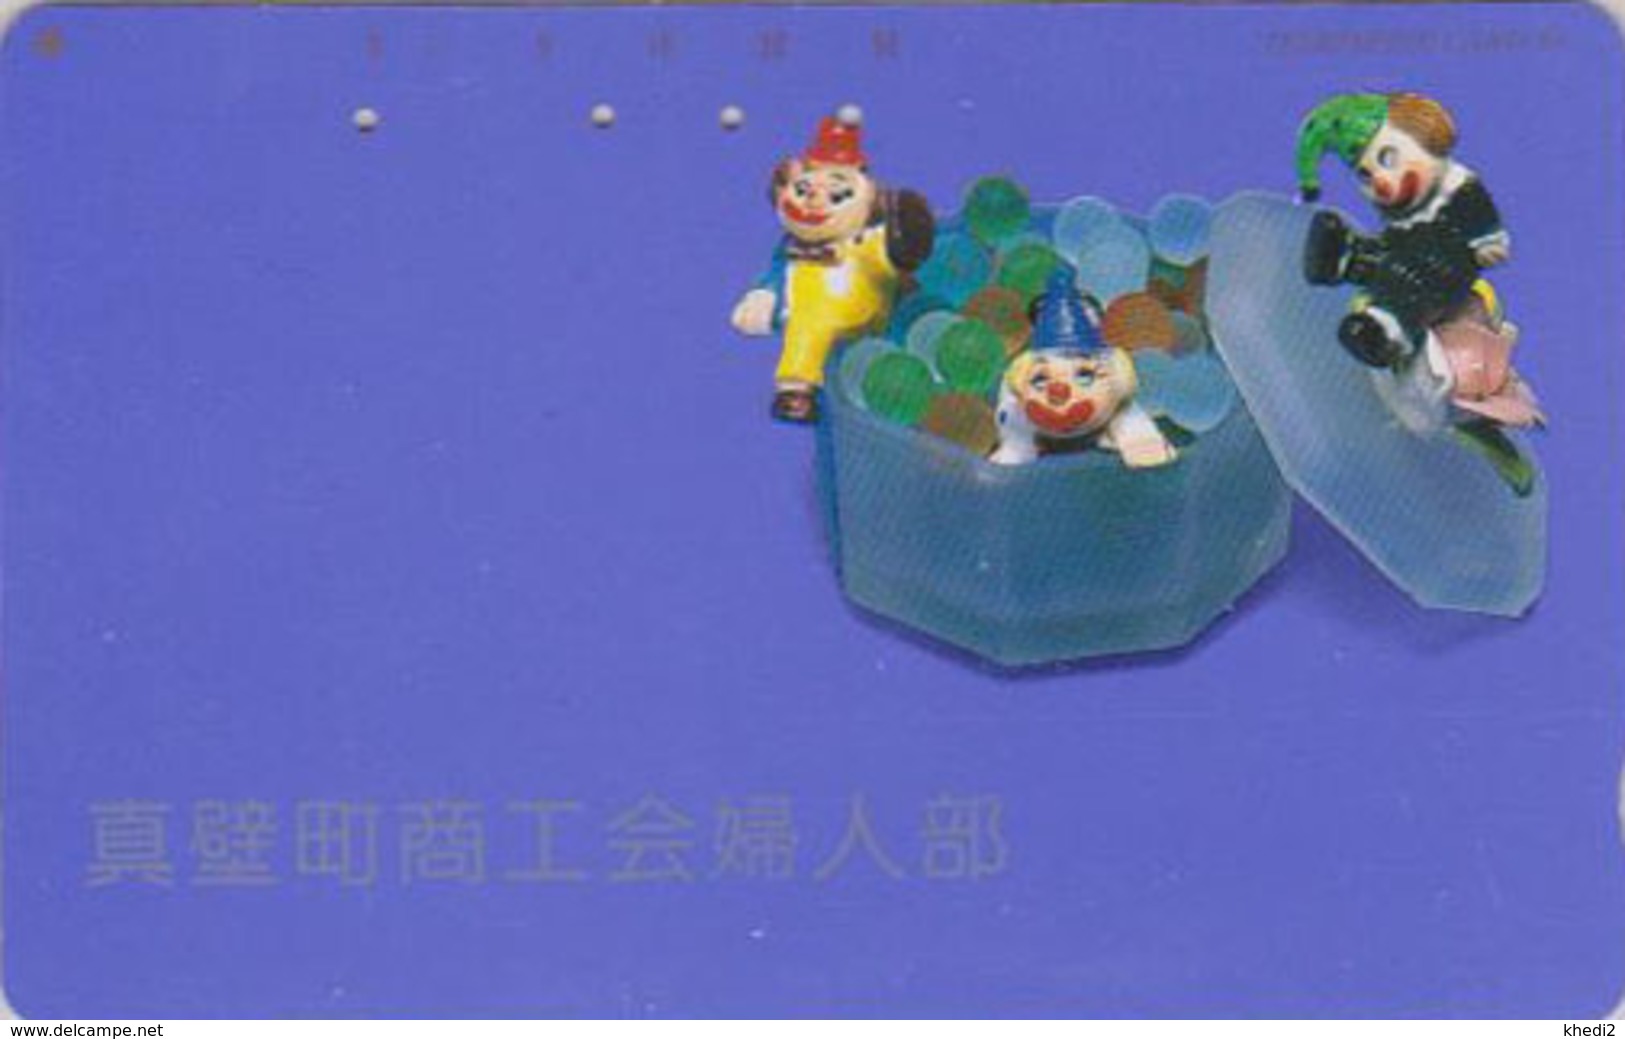 Télécarte Japon / 110-155 - CIRQUE - CLOWN & Billes - Marbles JAPAN Phonecard - MD 94 - Spiele